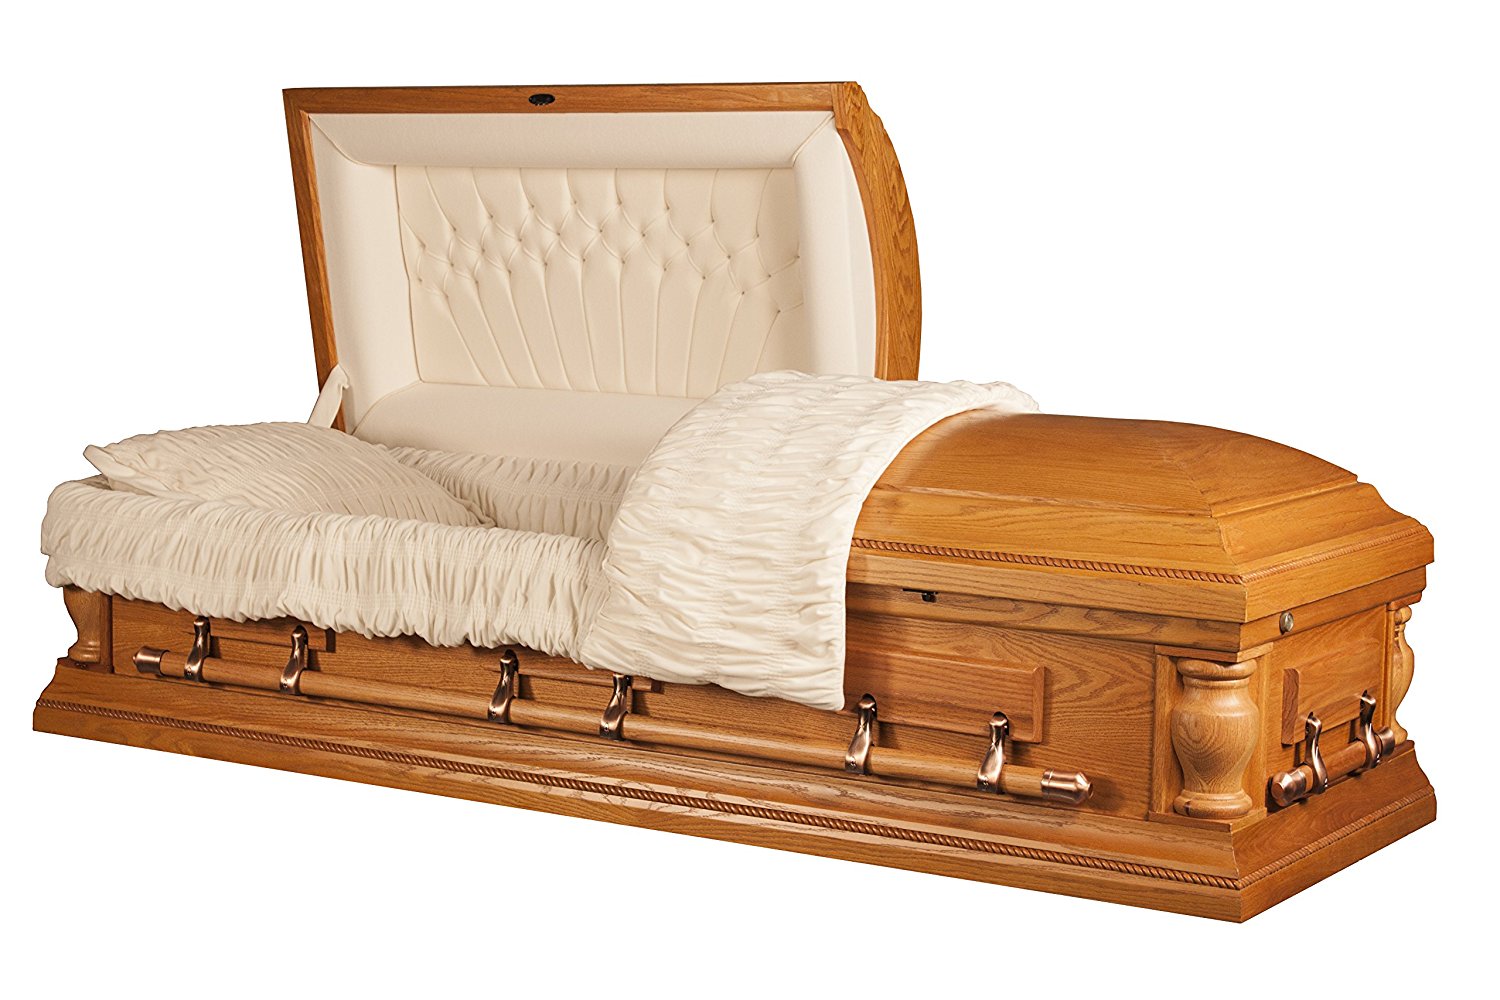 Affordable Oak Casket for Funeral